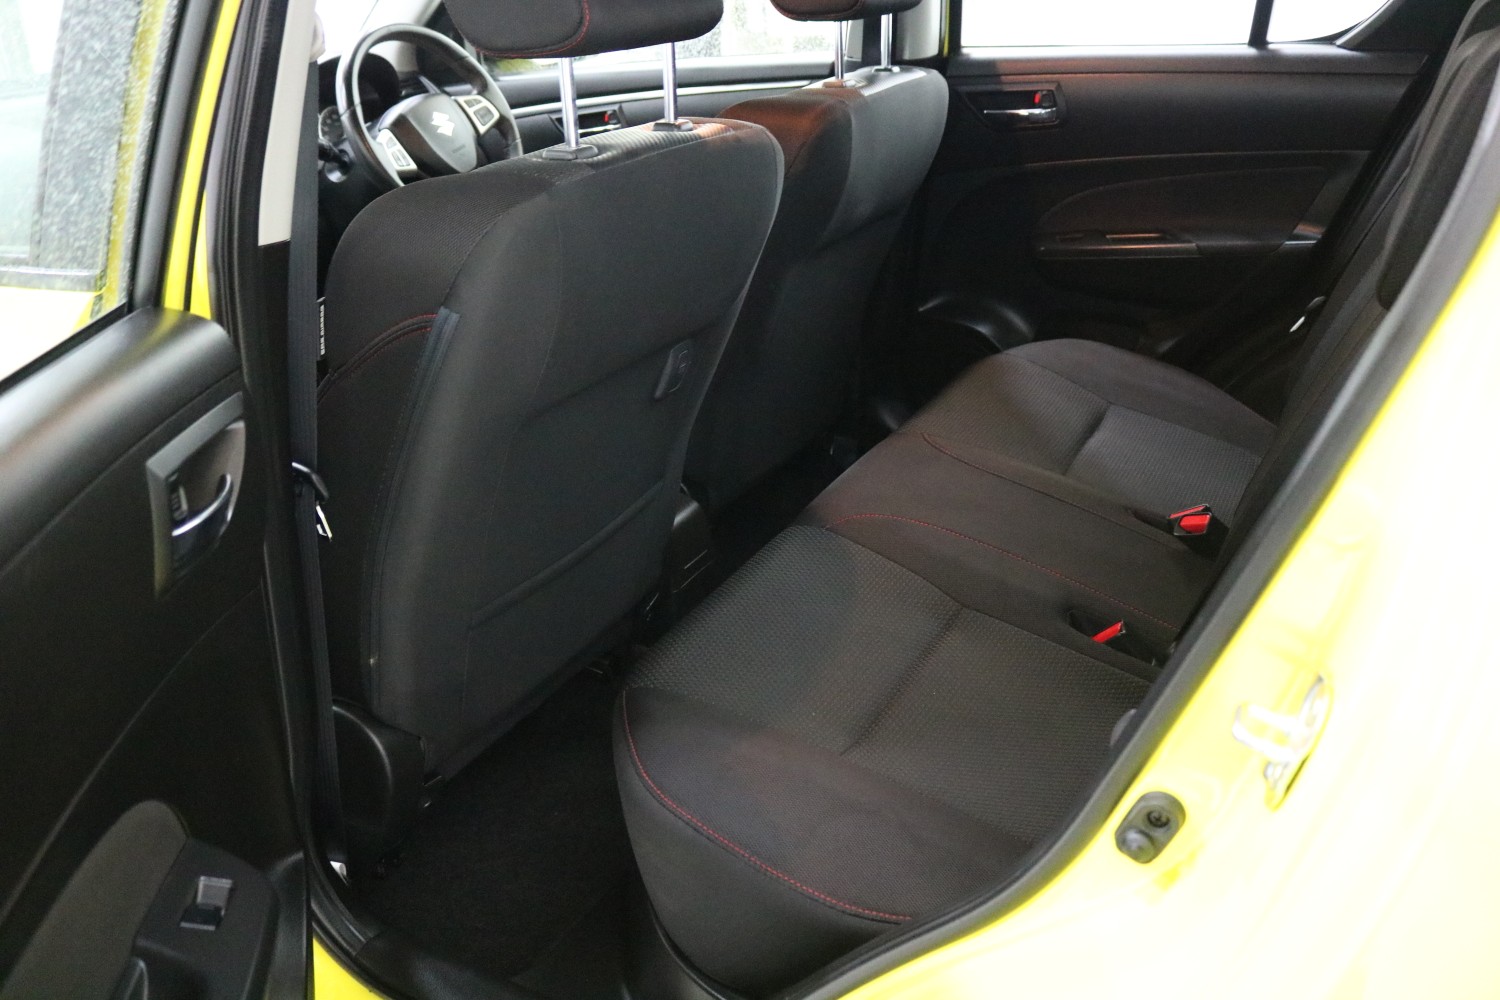 2015 Suzuki Swift FZ MY15 SPORT Hatch Image 6